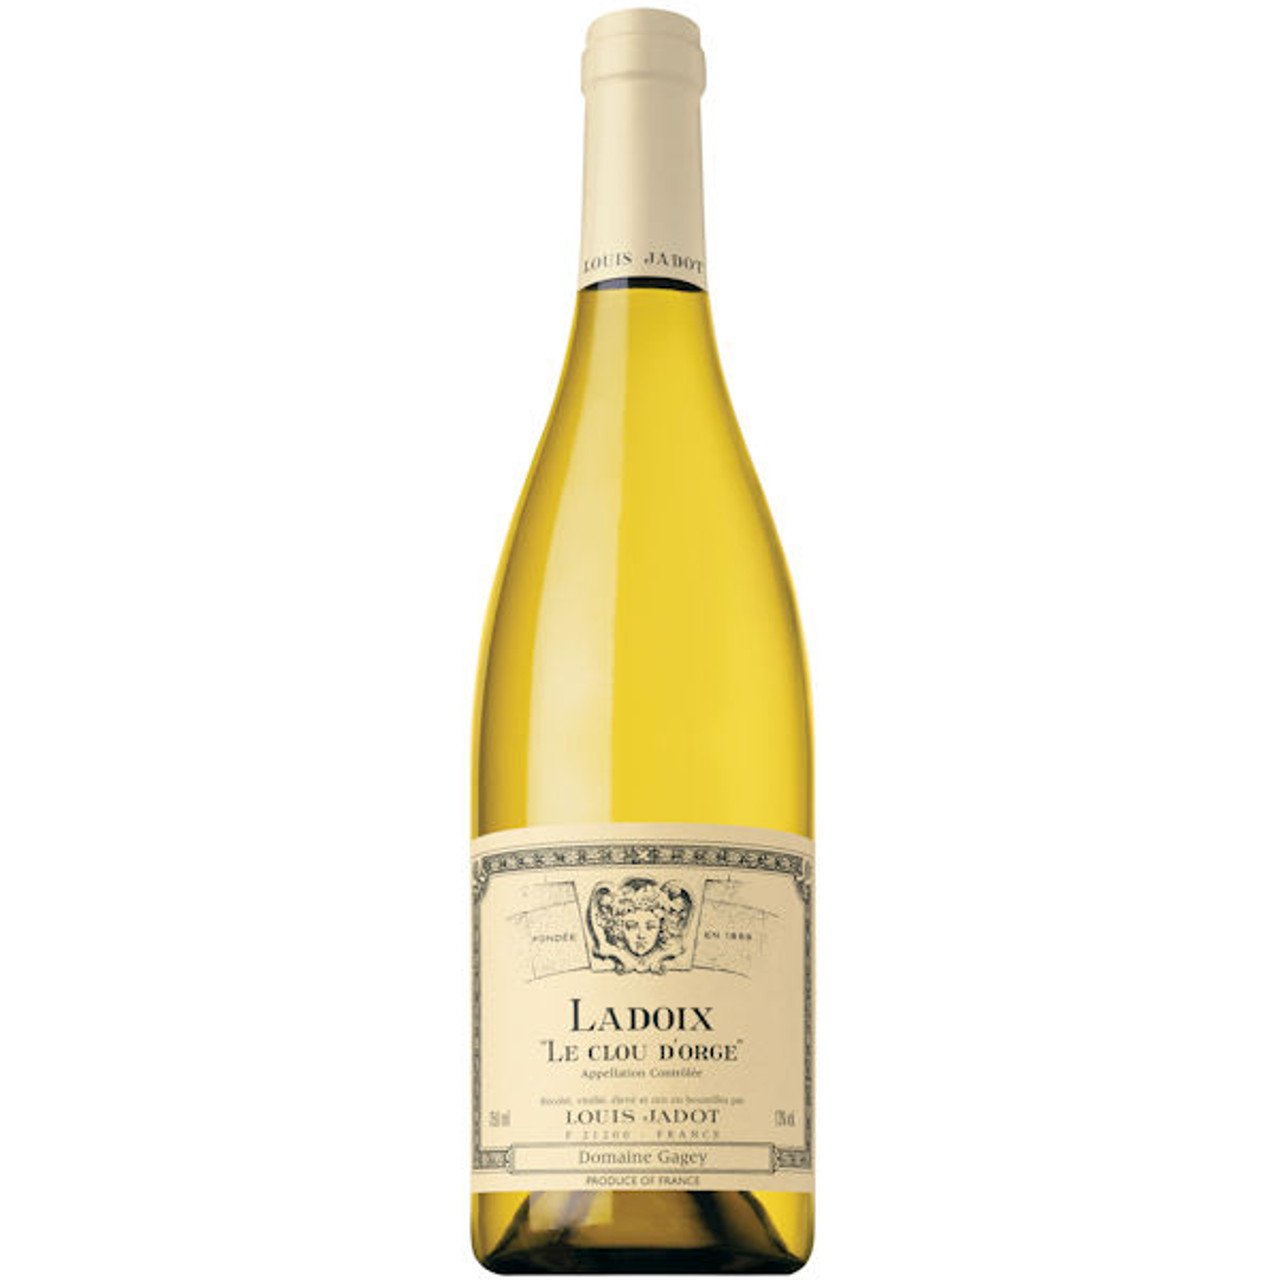 Louis Jadot Ladoix Le Clou D'Orge Burgundy Chardonnay